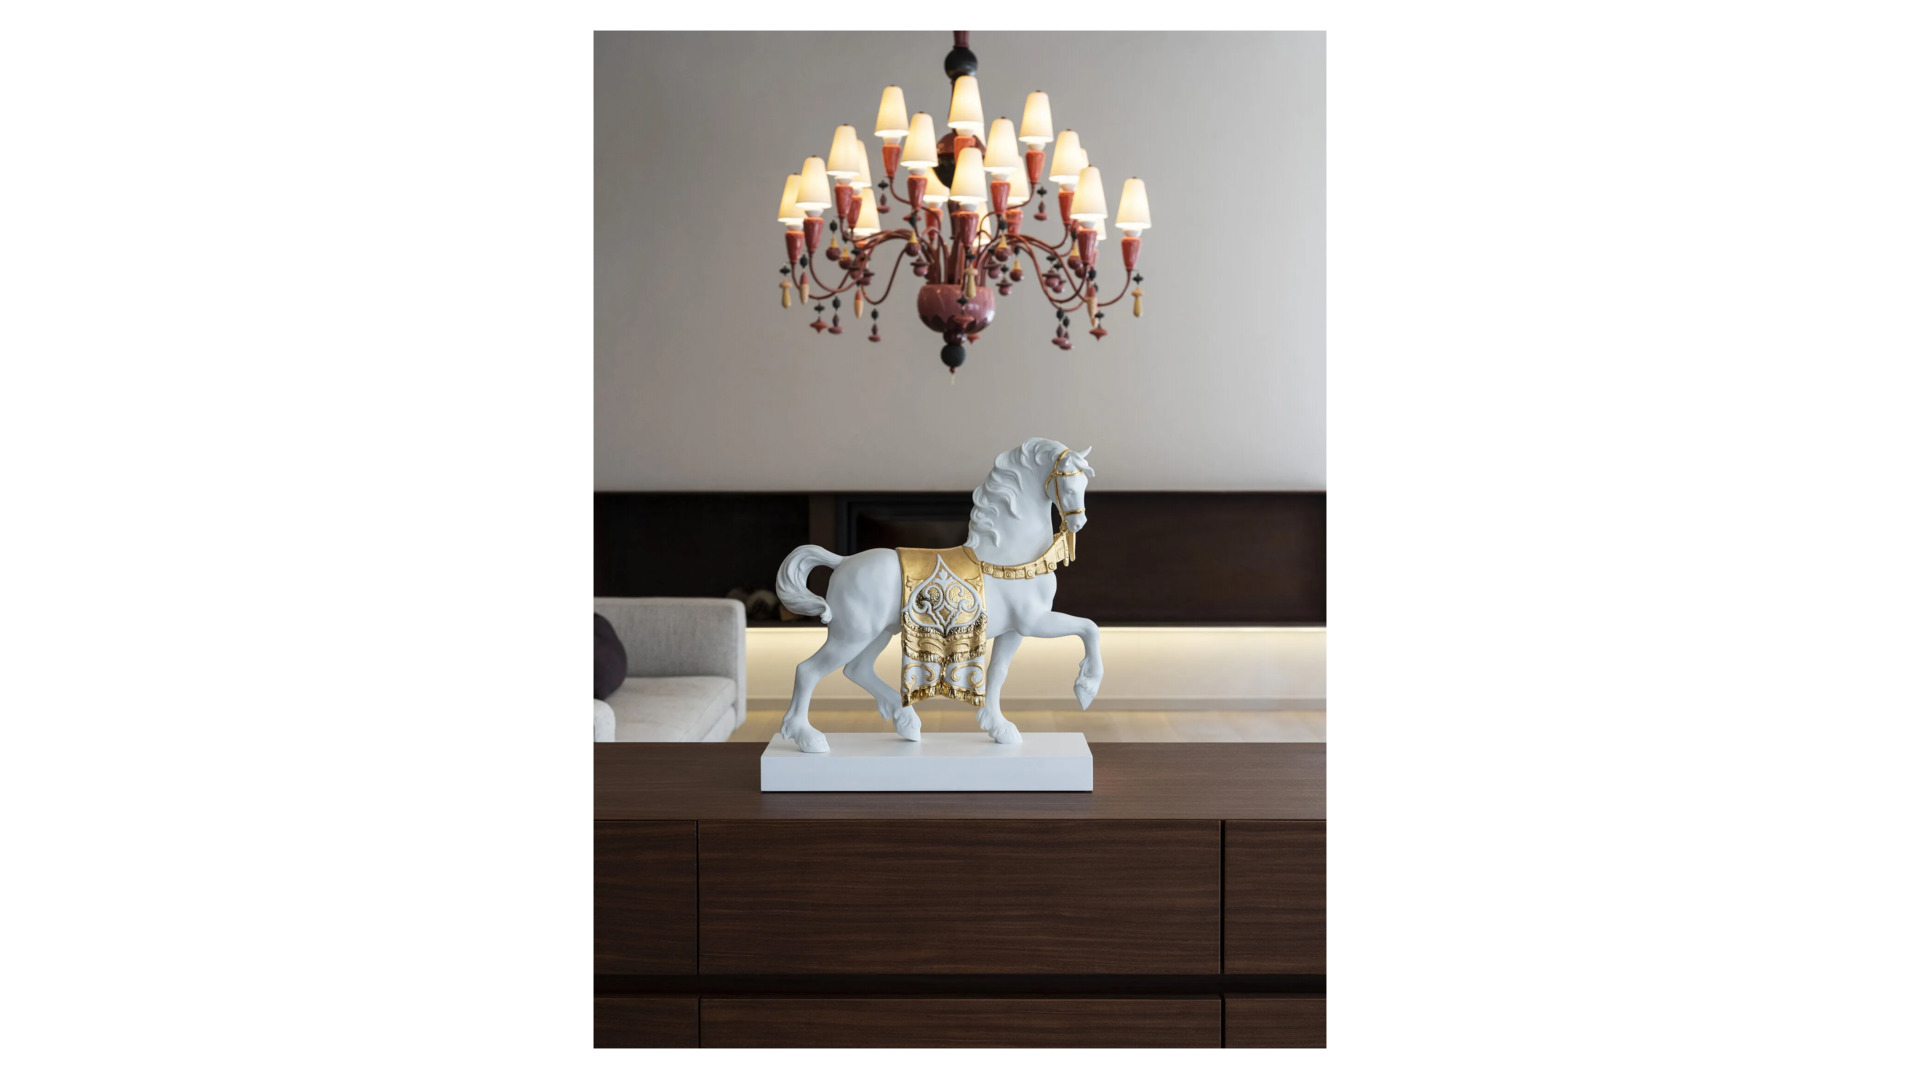 Фигурка Lladro Дворцовый конь Ре-Деко 40x42 см, фарфор, белый, золотой